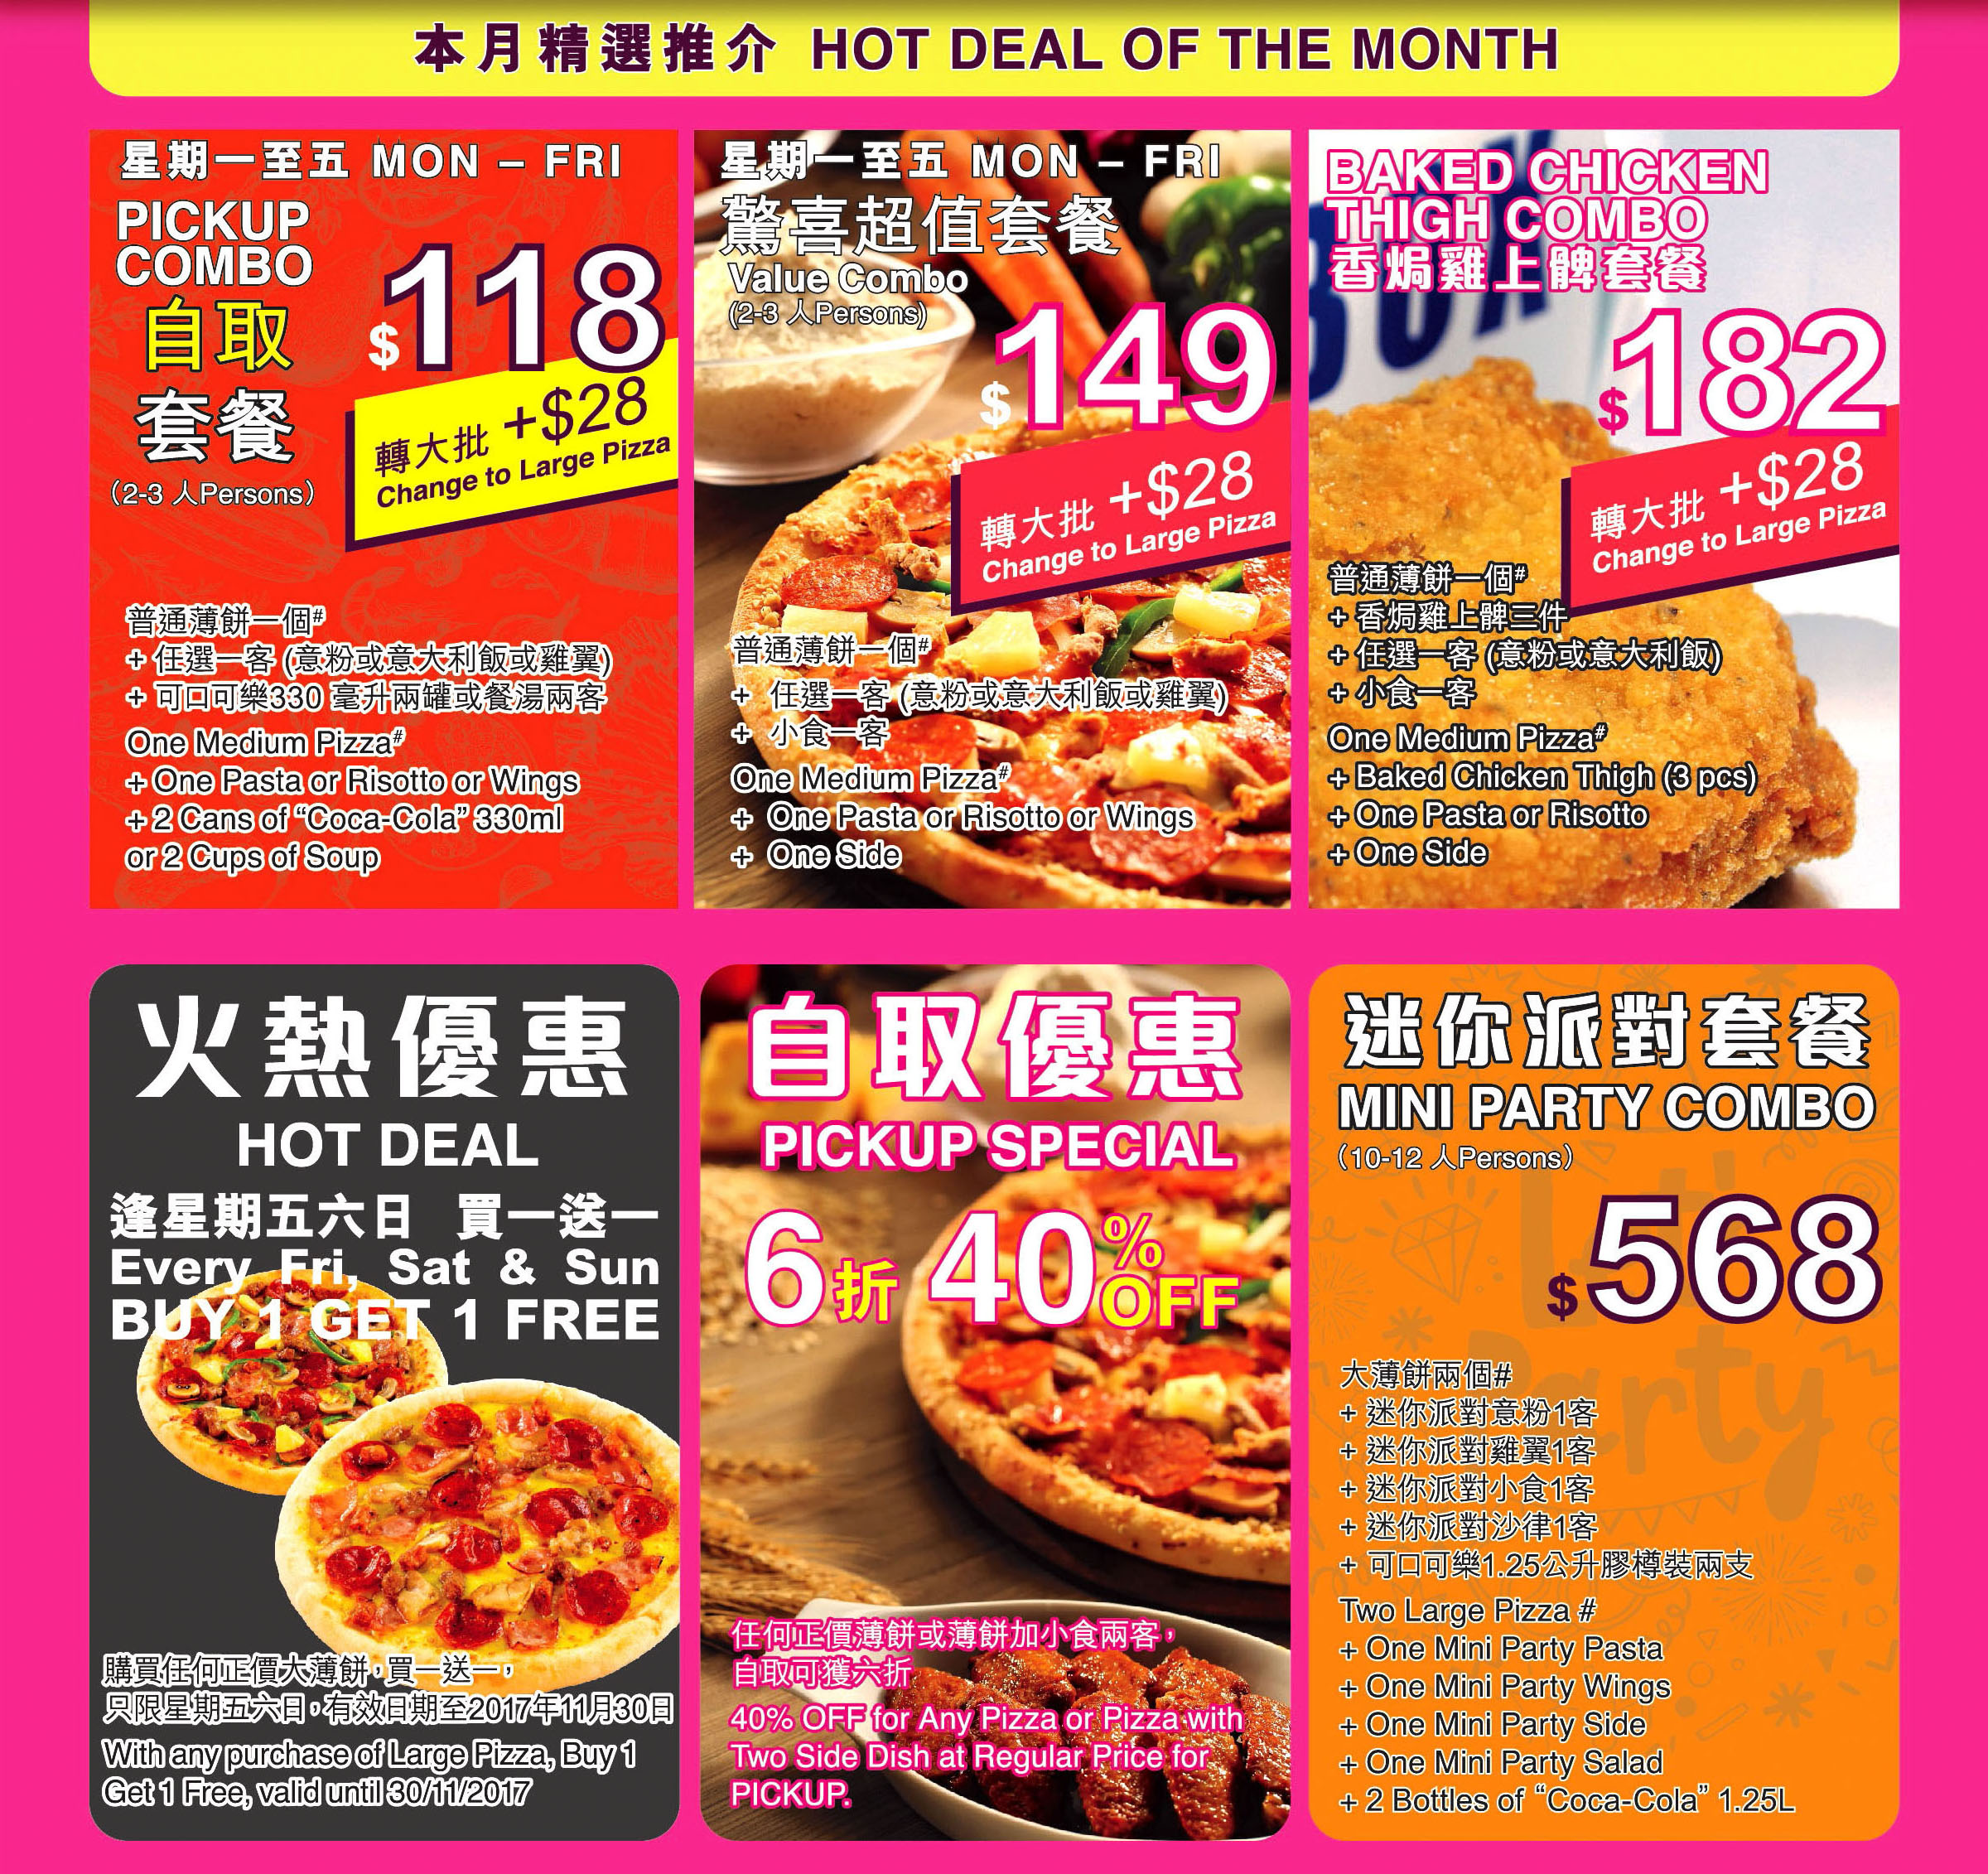 香港pizza box薄餅速遞服務 pizza box delivery menu promotion package hong kong 美食學生優惠價錢自取外紙賣服務餐劵餐單特價格餐牌價目表